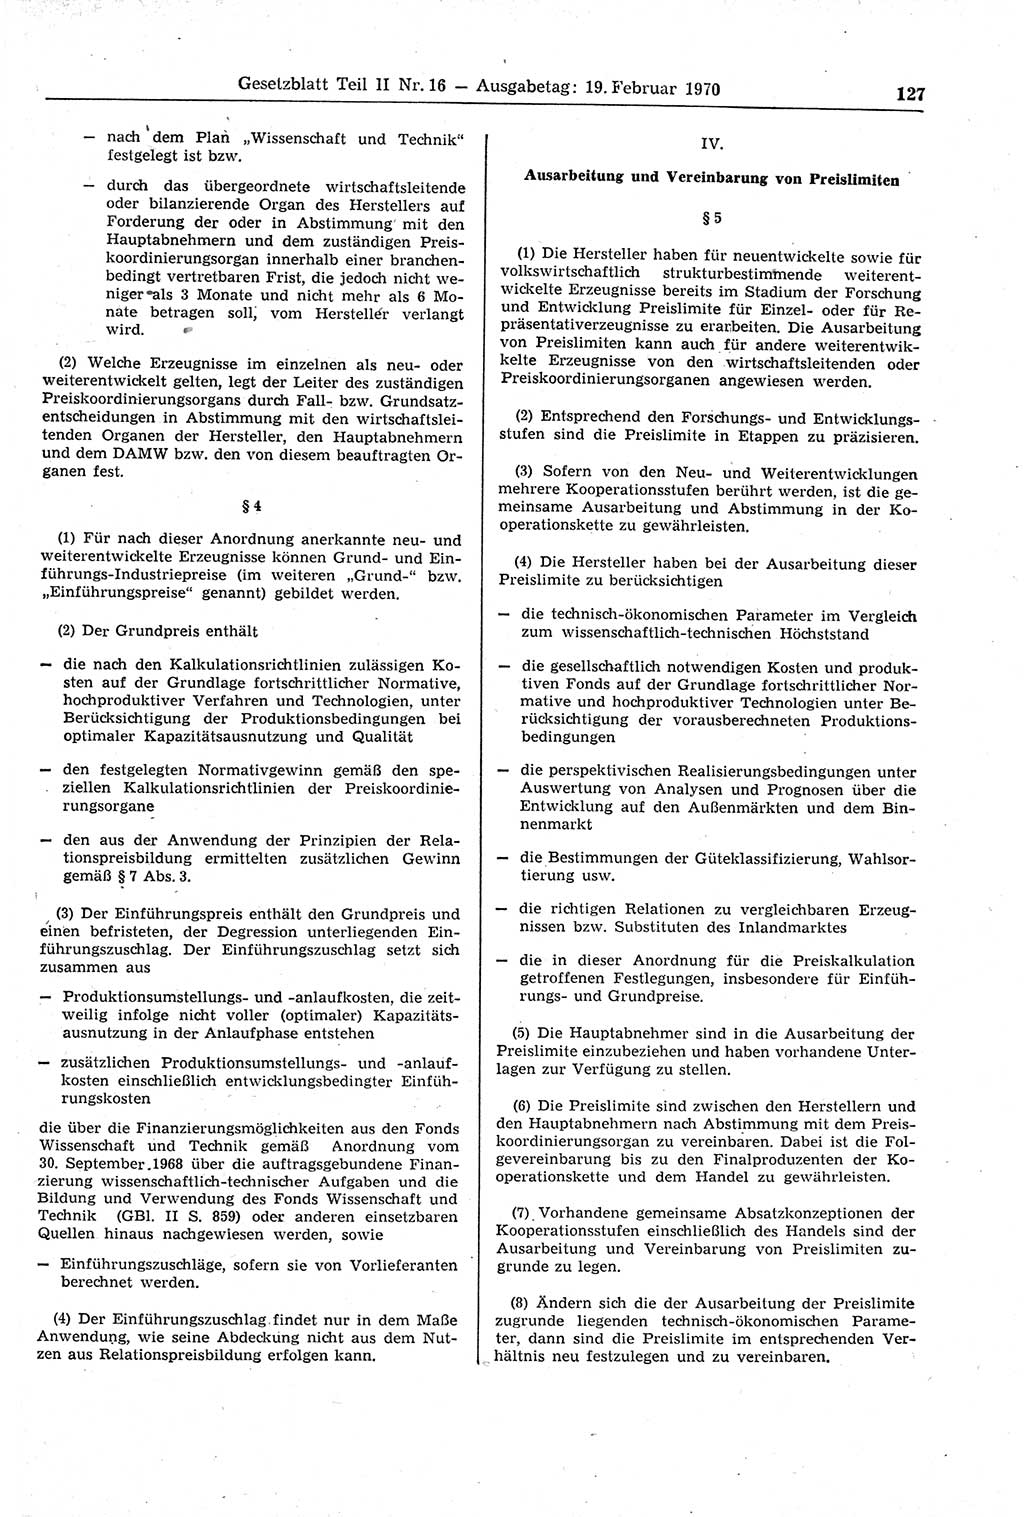 Gesetzblatt (GBl.) der Deutschen Demokratischen Republik (DDR) Teil ⅠⅠ 1970, Seite 127 (GBl. DDR ⅠⅠ 1970, S. 127)